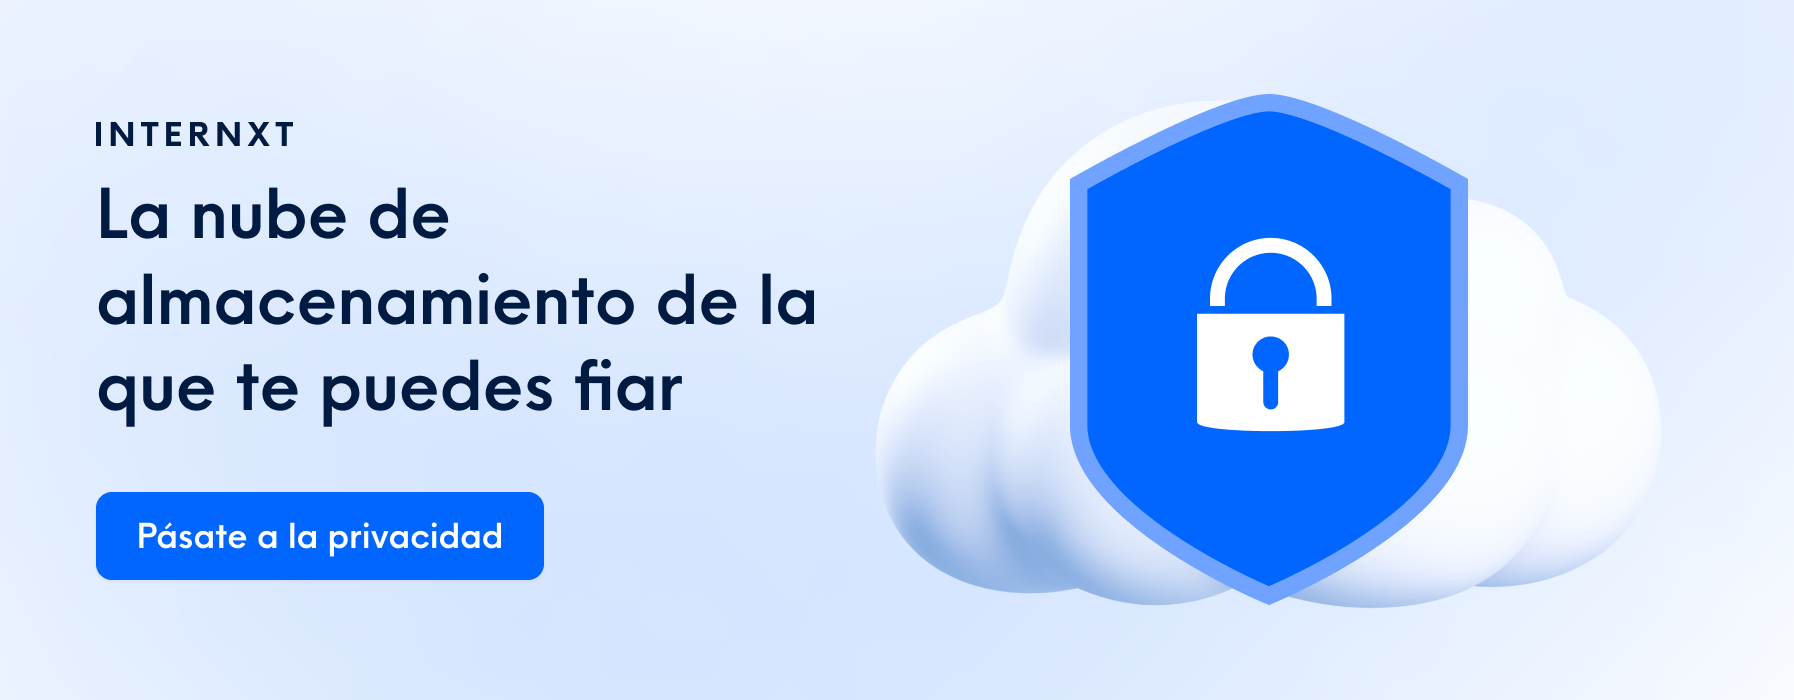 Internxt es un servicio de almacenamiento en la nube basado en encriptación y privacidad.